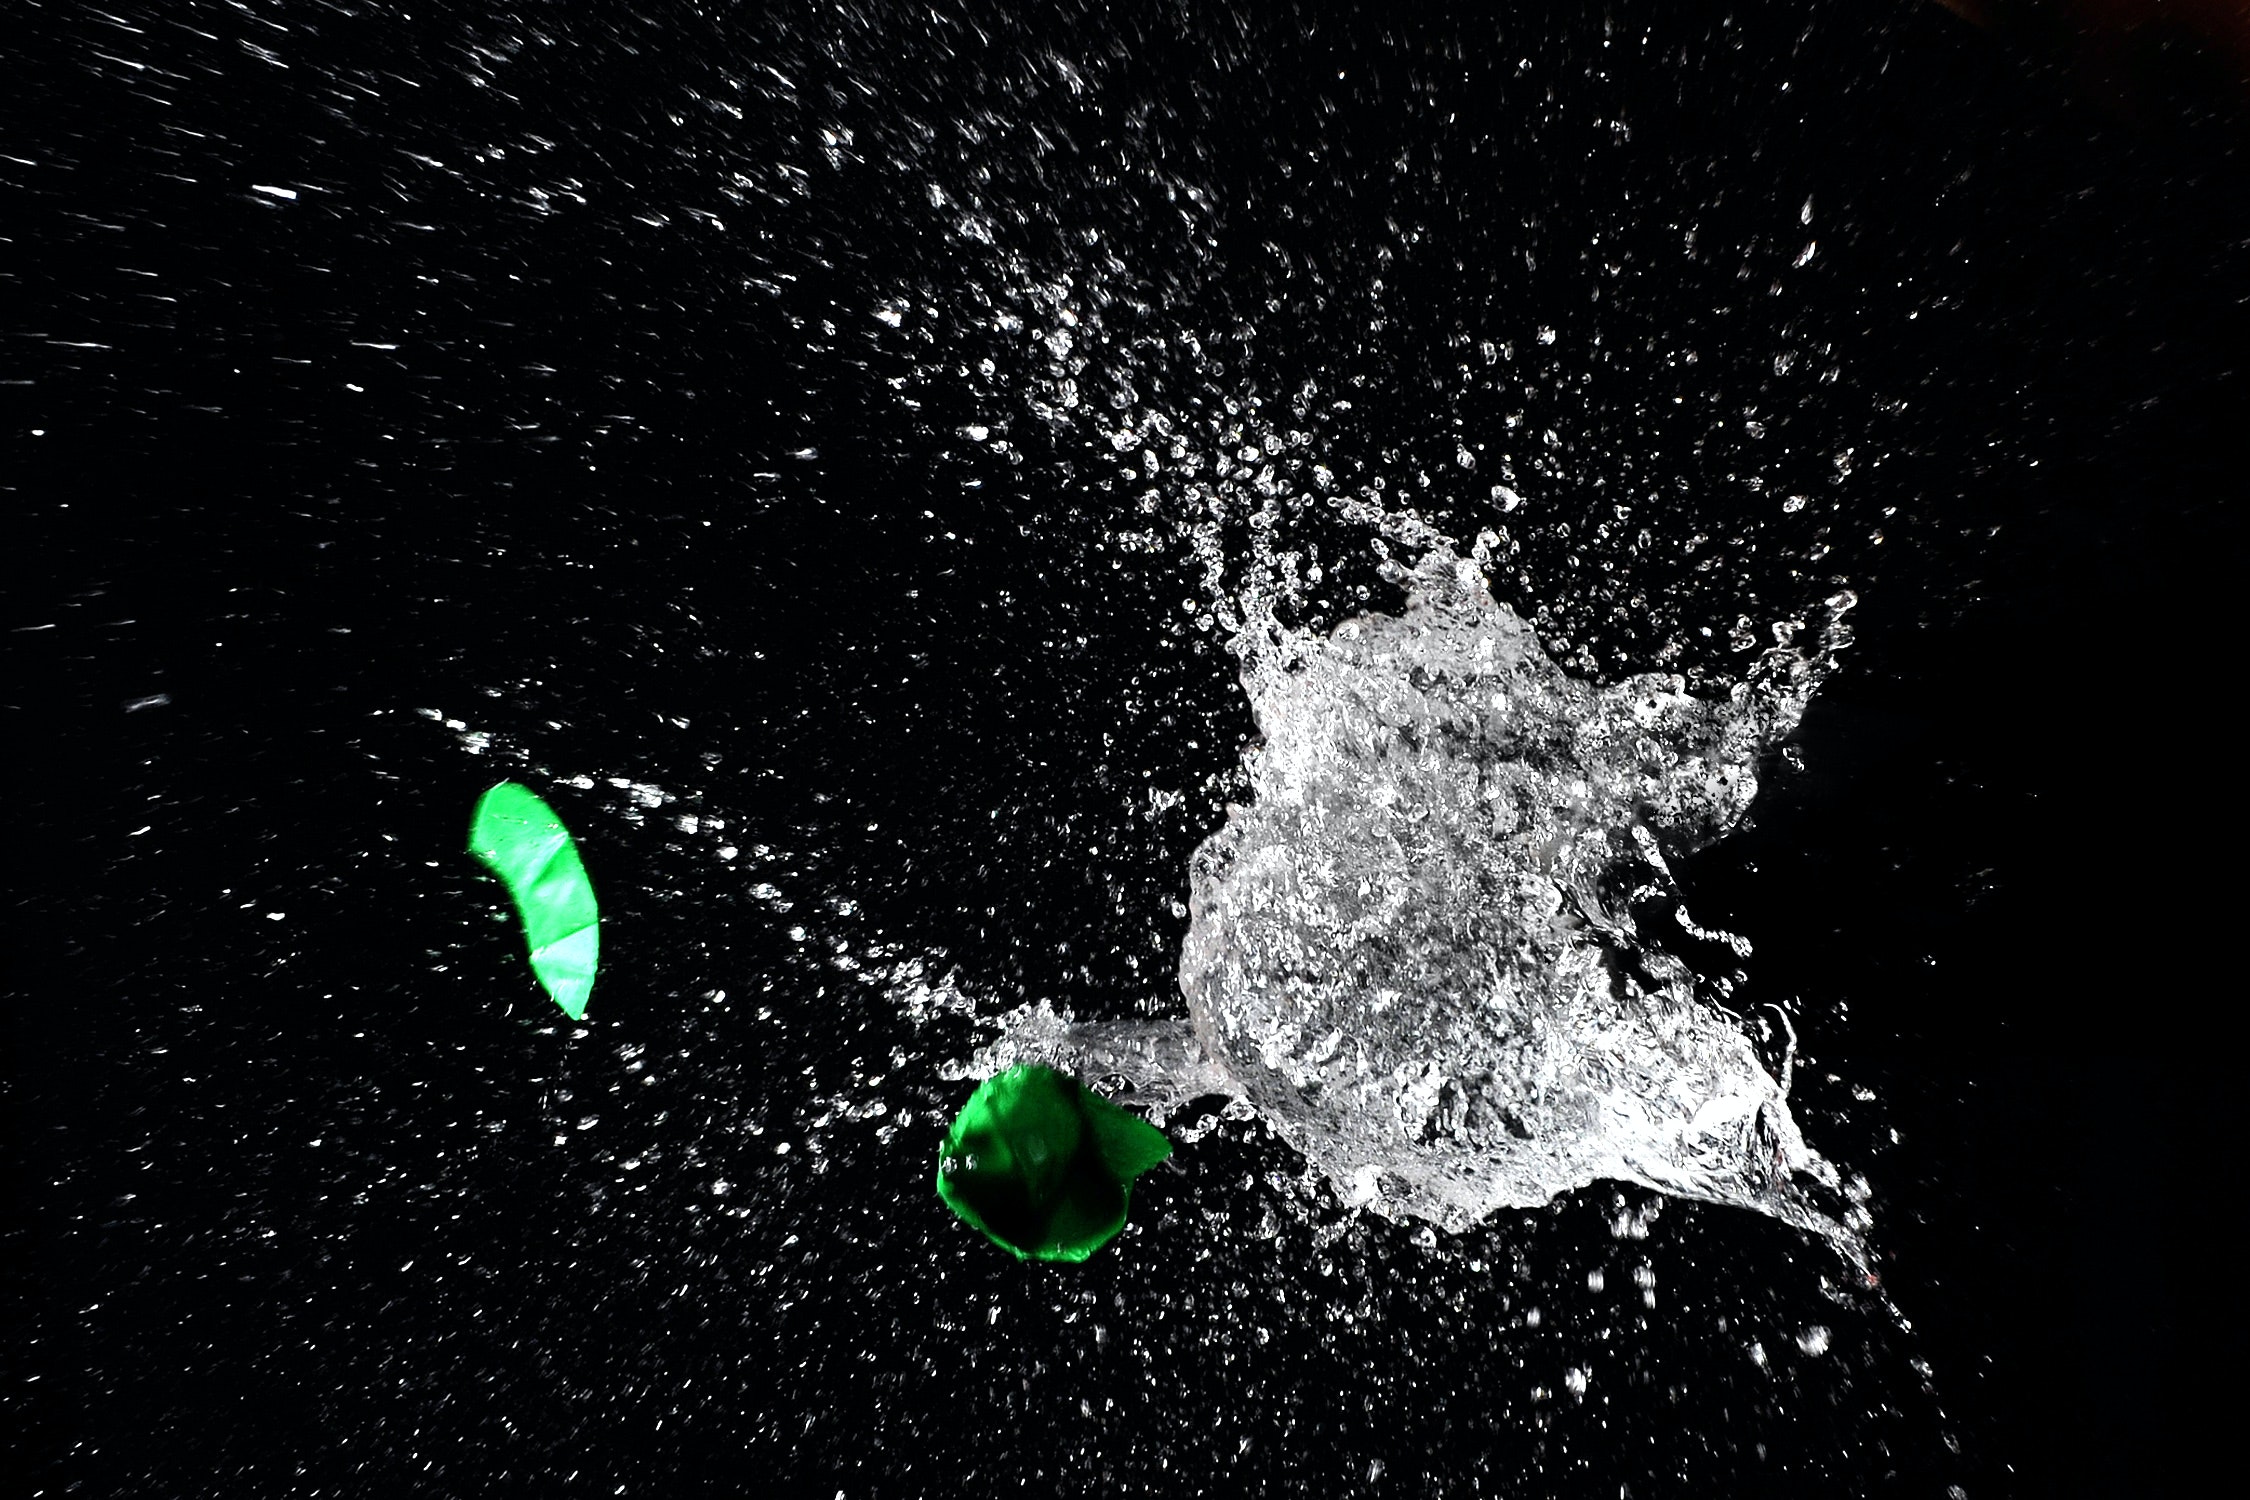 broken green water balloon and splash of water